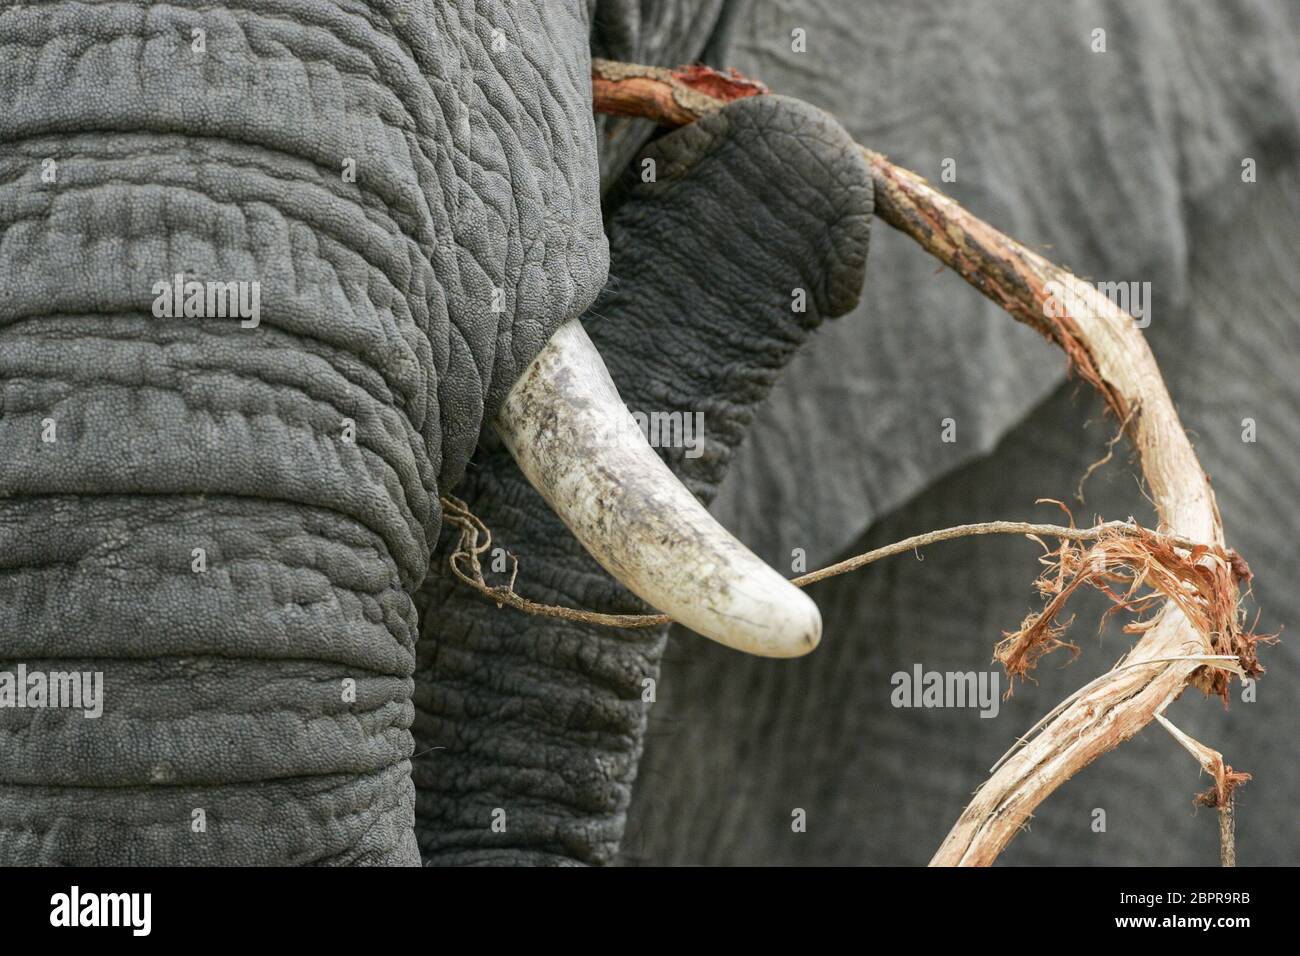 Erwachsener Elefant Entfernen der Rinde aus einem Zweig namens Elefanten Zahnstocher Kruger Park Südafrika Stockfoto